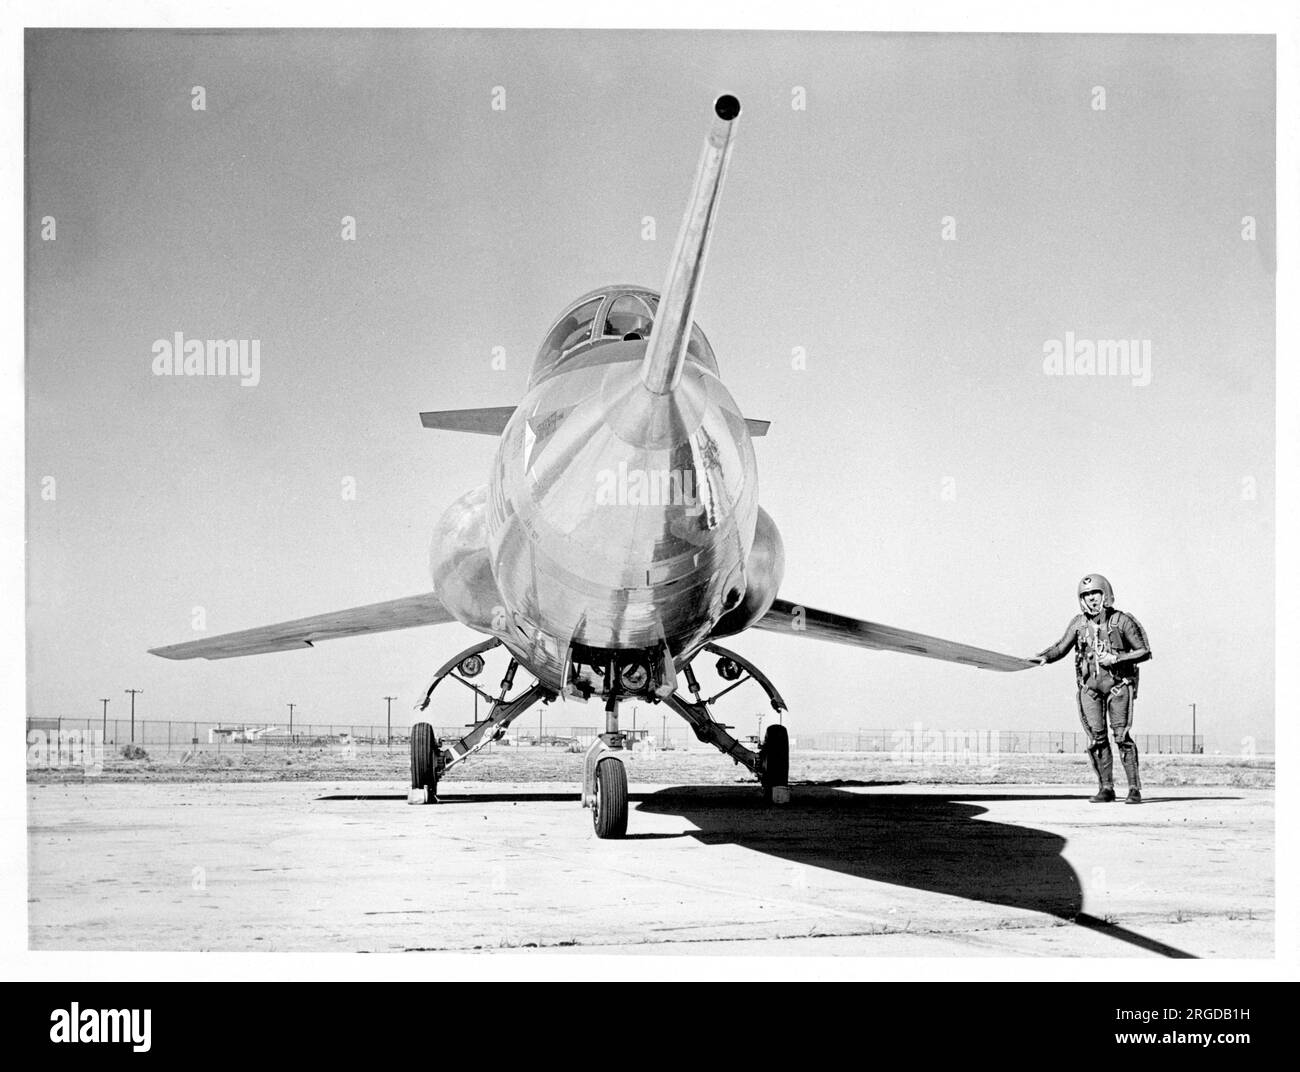 United States Air Force - Lockheed YF-104A Starfighter 55-2956 (MSN 183-1002), die Nummer 2 YF-104, gesehen mit einem Piloten in Partialdruckkleidung, enthüllt am 17. April 1956 in Palmdale, Kalifornien. (Die Verkleidungen über den Einlässen und Stoßstangen wurden angebracht, um zu verhindern, dass interessierte Parteien (Sowjetunion) die Leistung anhand der Einlassgeometrie bestimmen.) Stockfoto